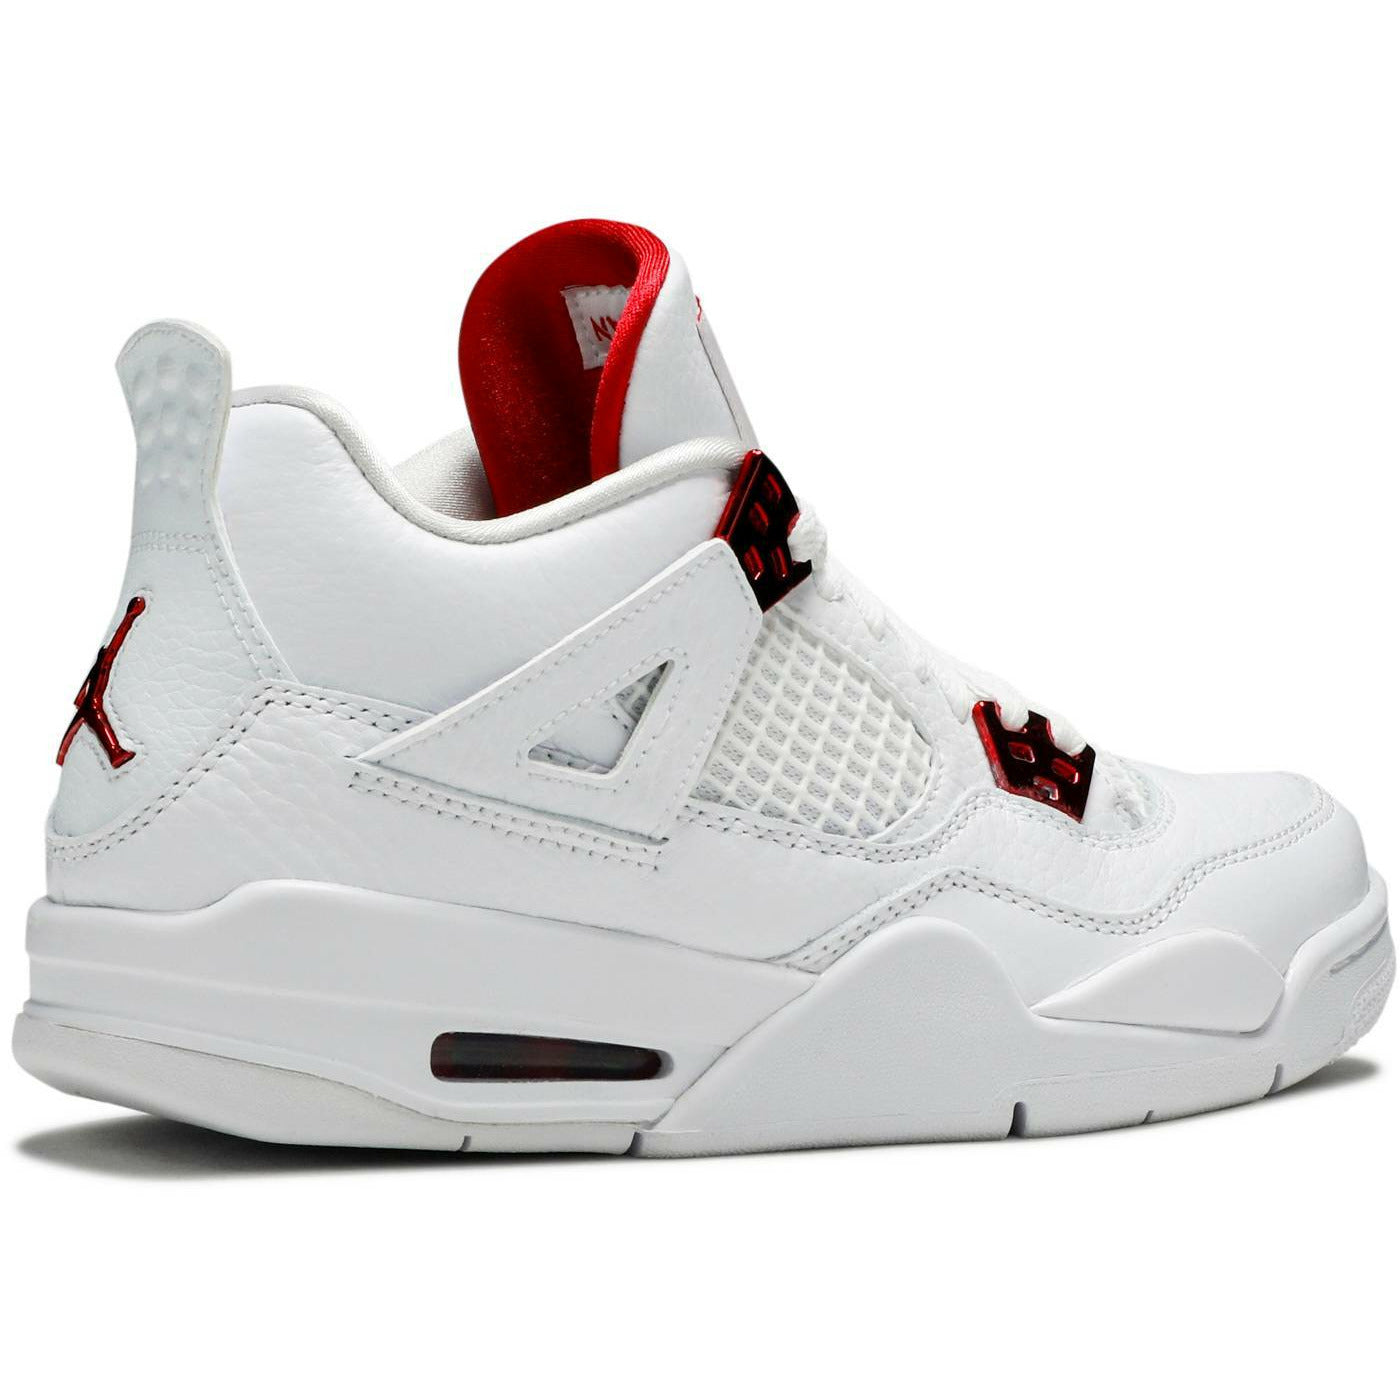 Air Jordan 4 Retro "Metallic Red" (GS / Juniors) mrsneaker